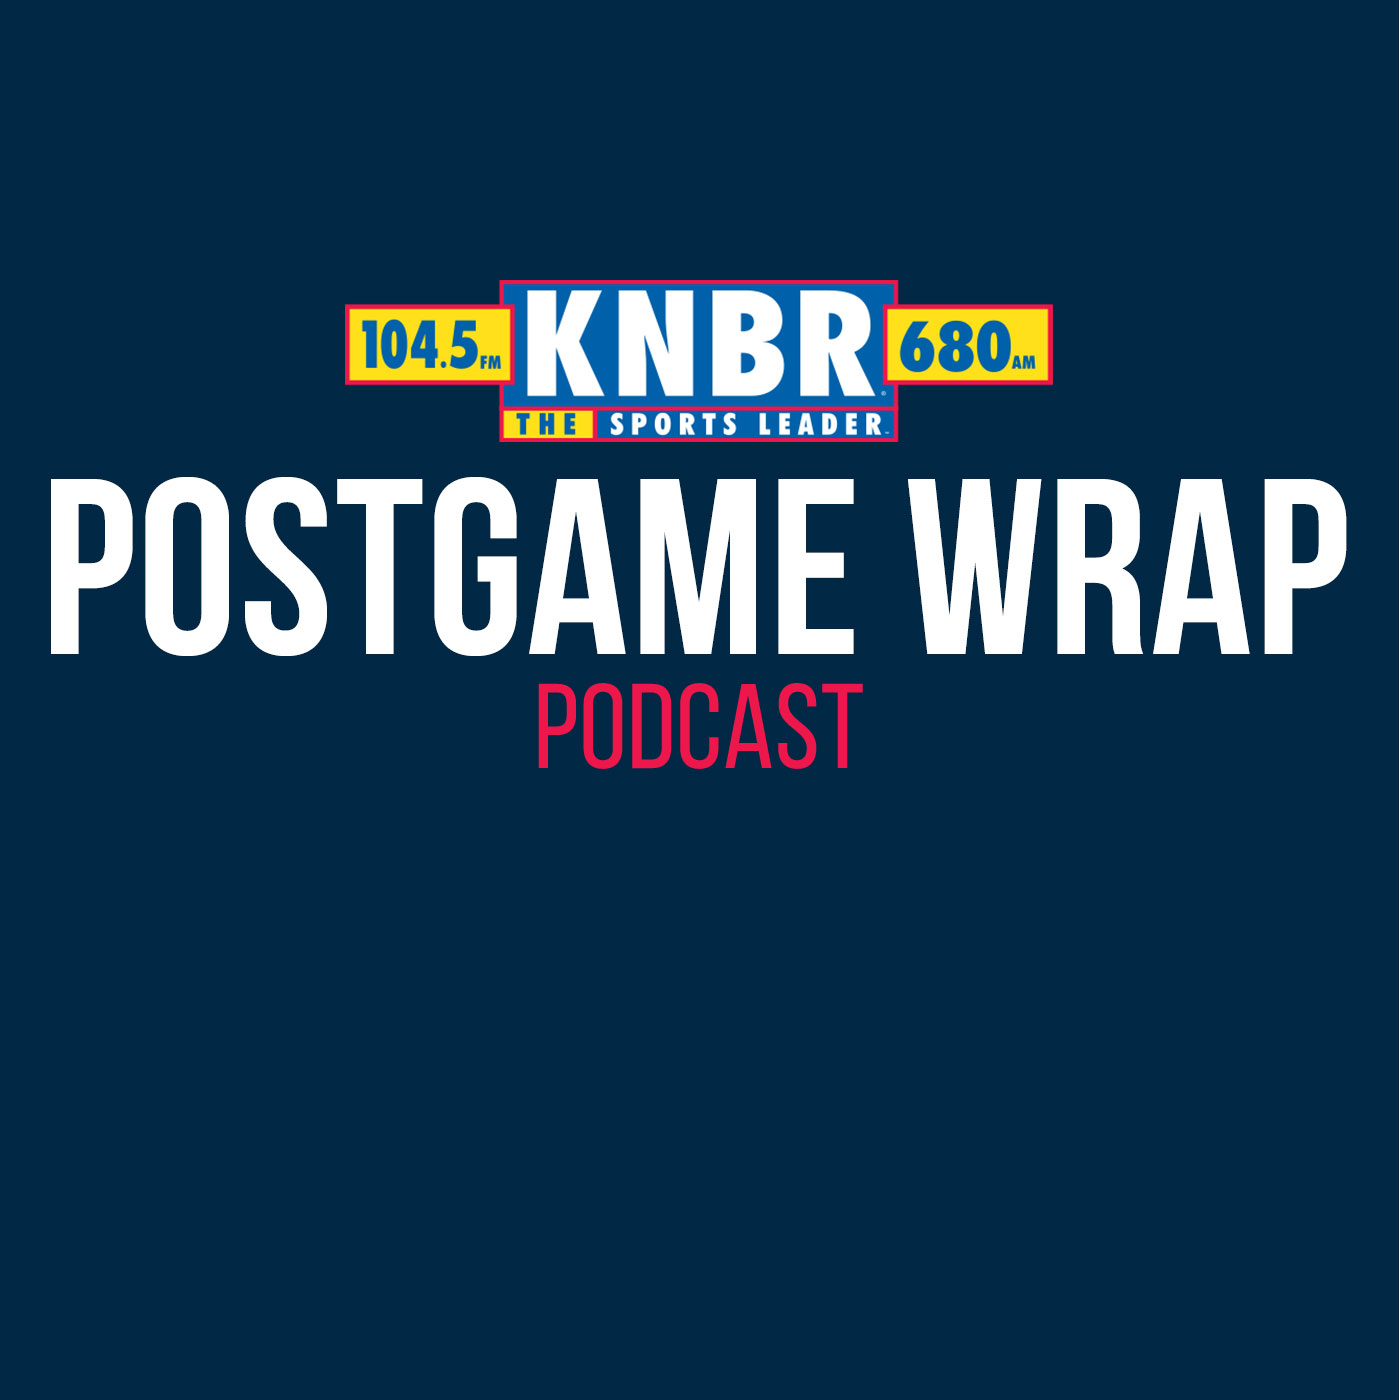 5-13 Postgame Wrap: Giants 3, Pirates 1